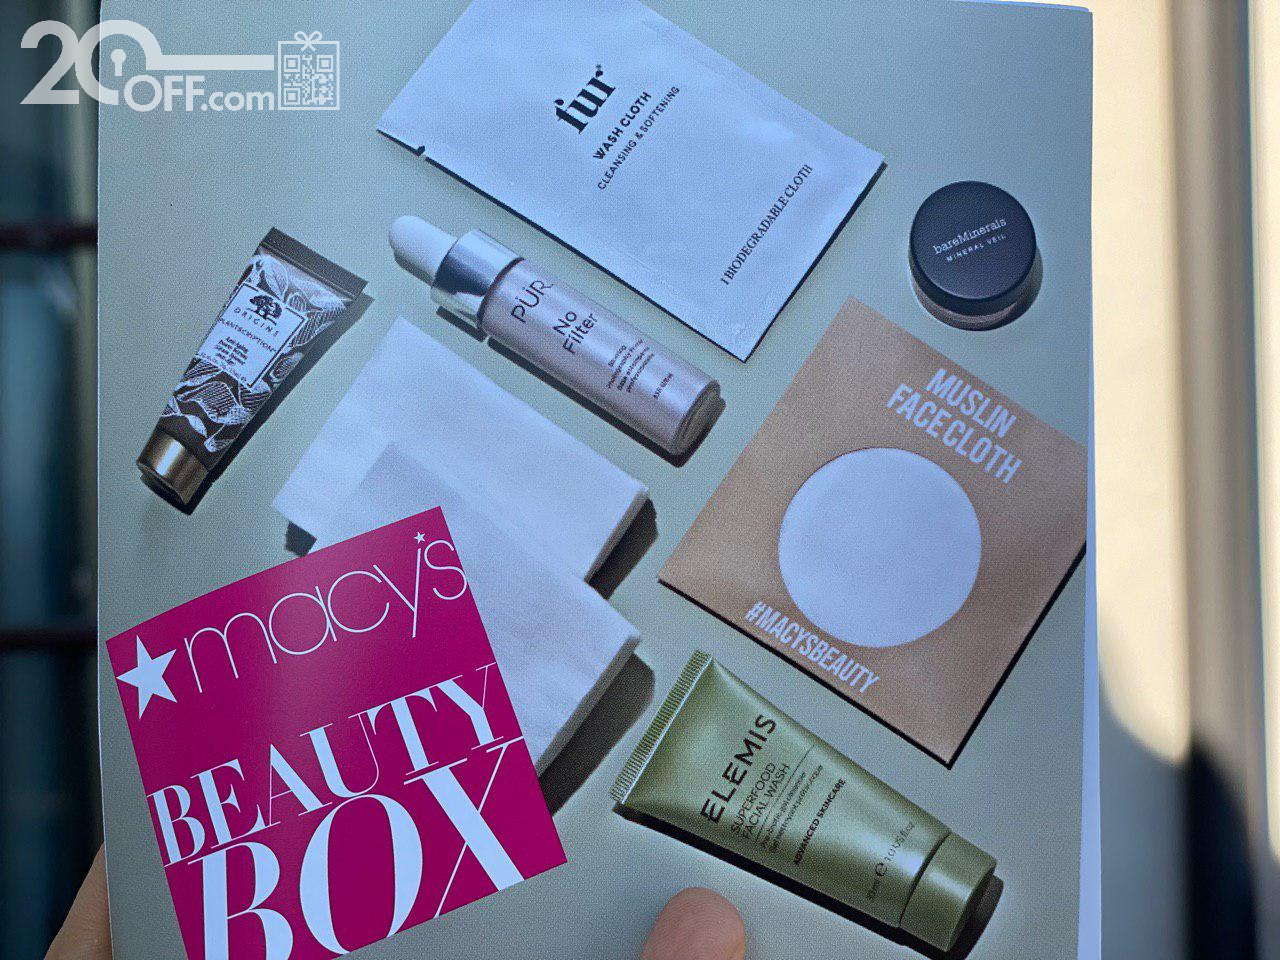 Maxys Beauty Box